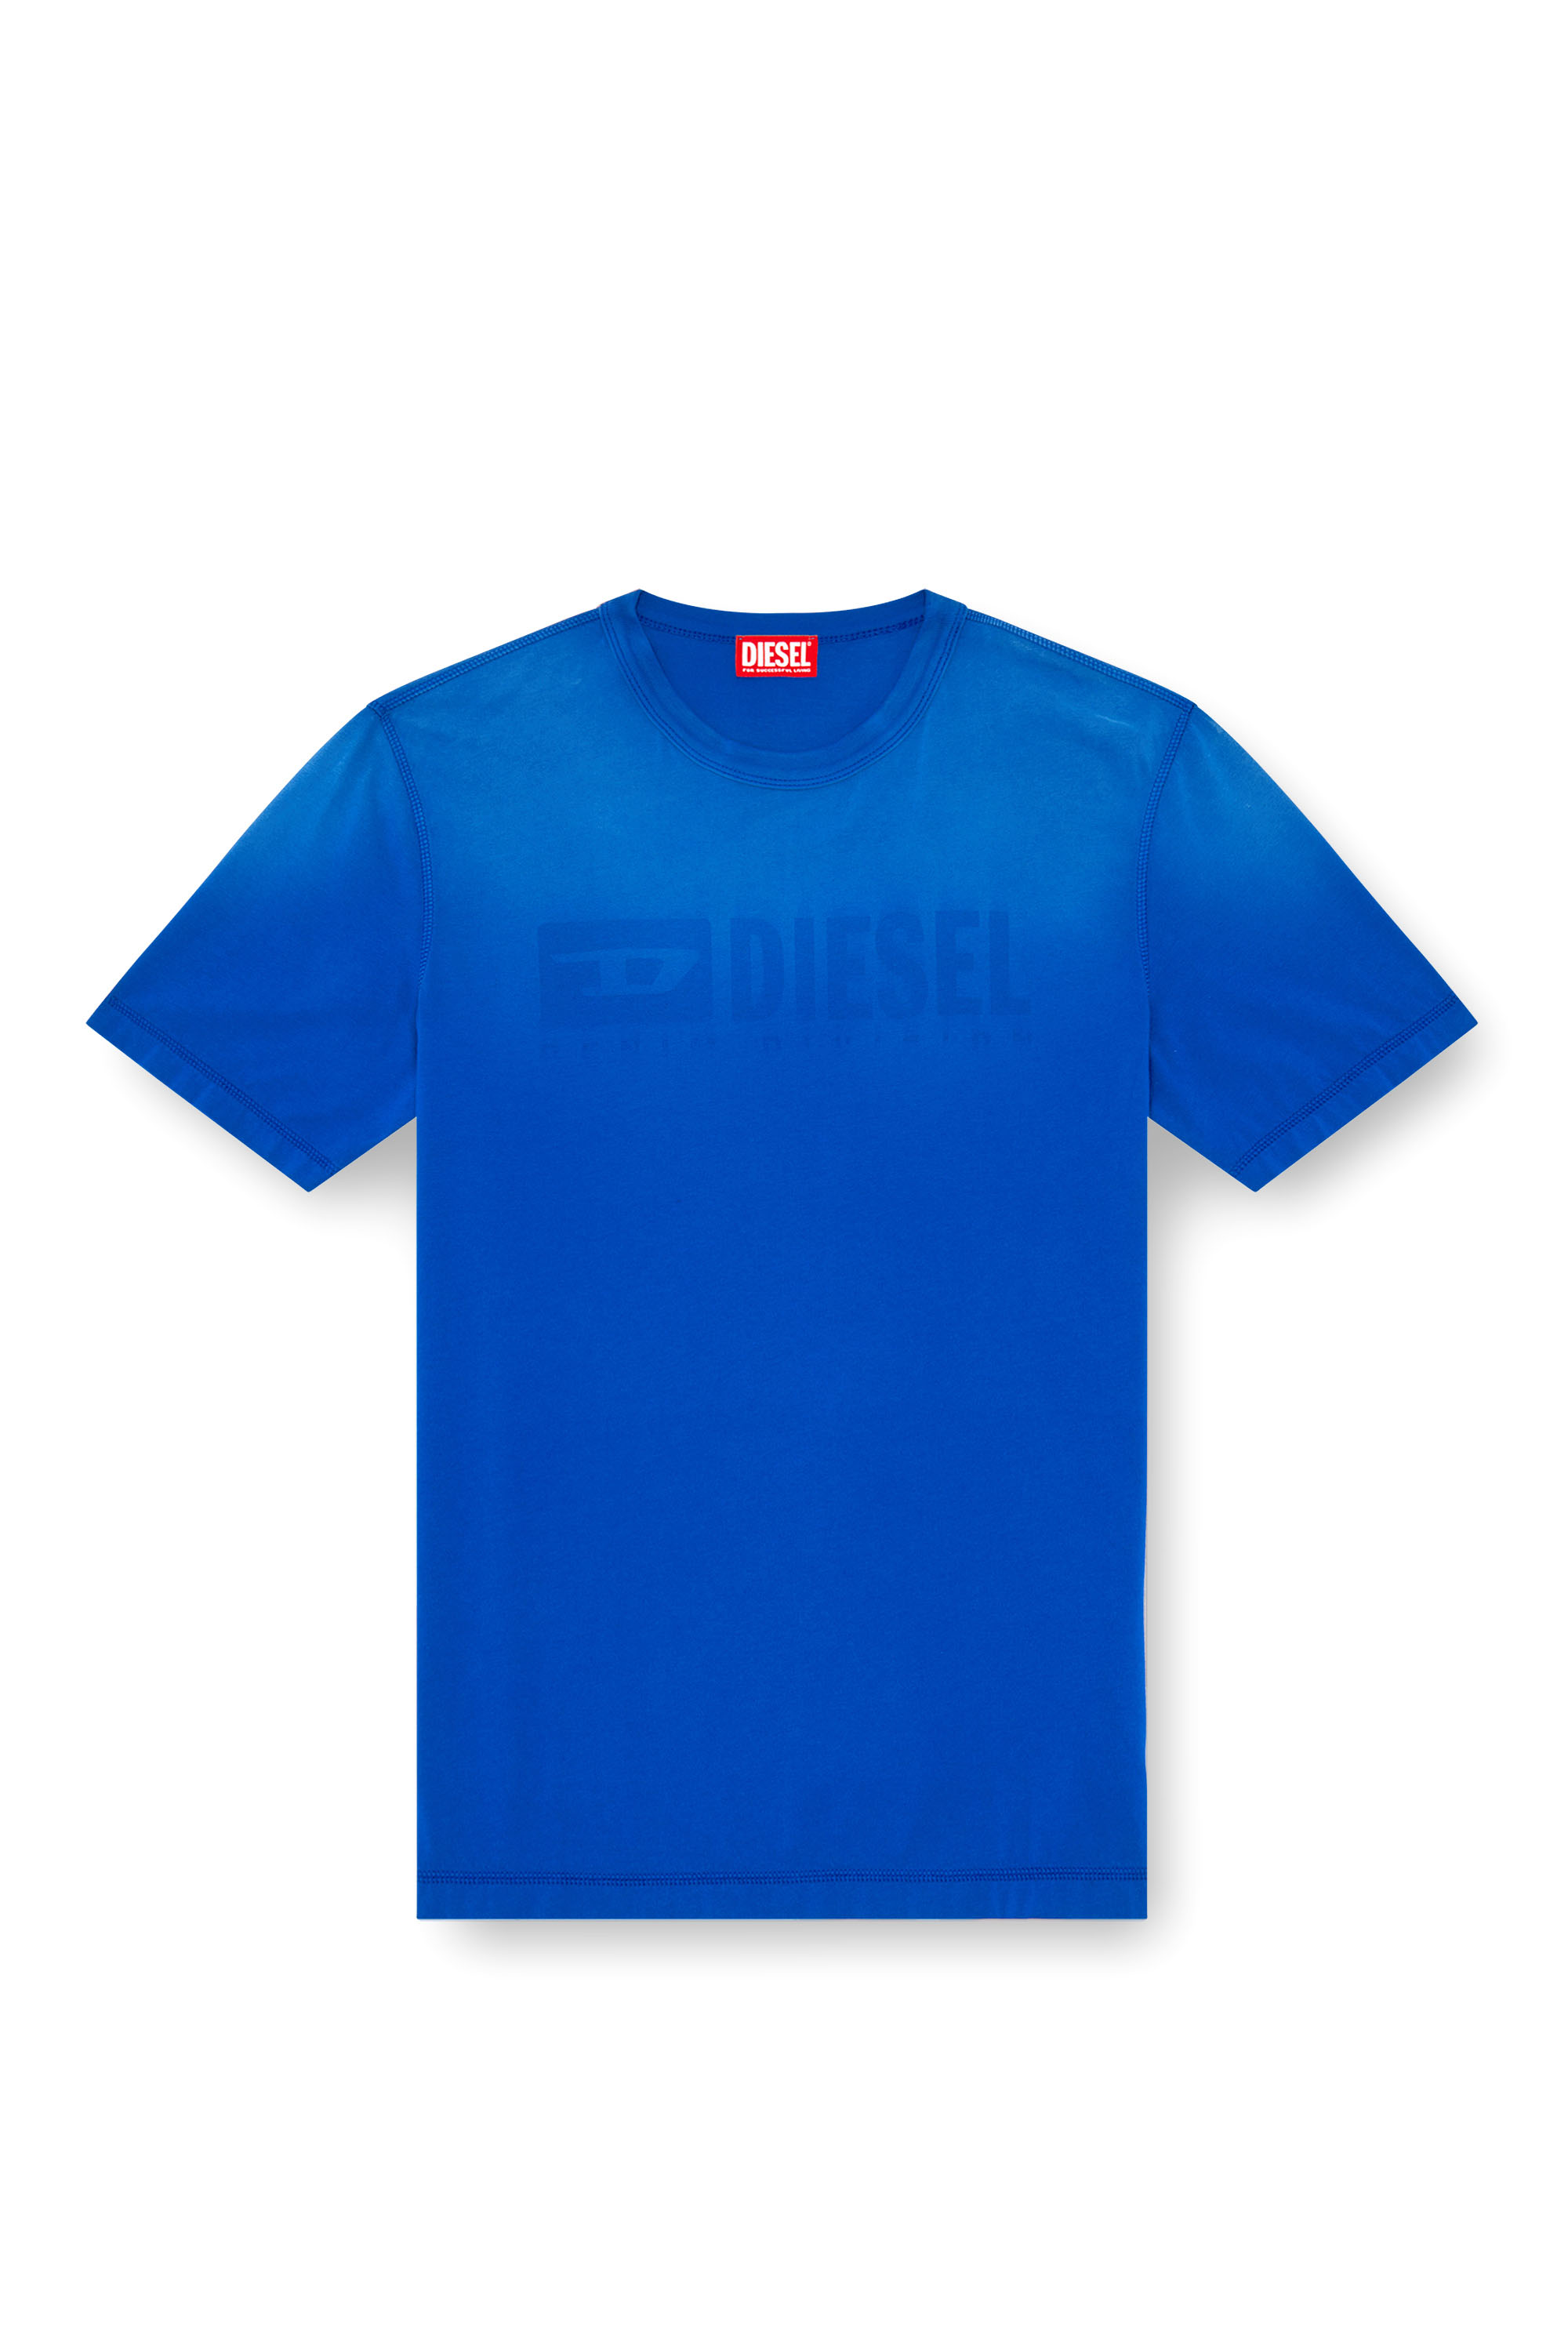 Diesel - T-ADJUST-K4, Hombre Camiseta con tratamiento desteñido por el sol in Azul marino - Image 3